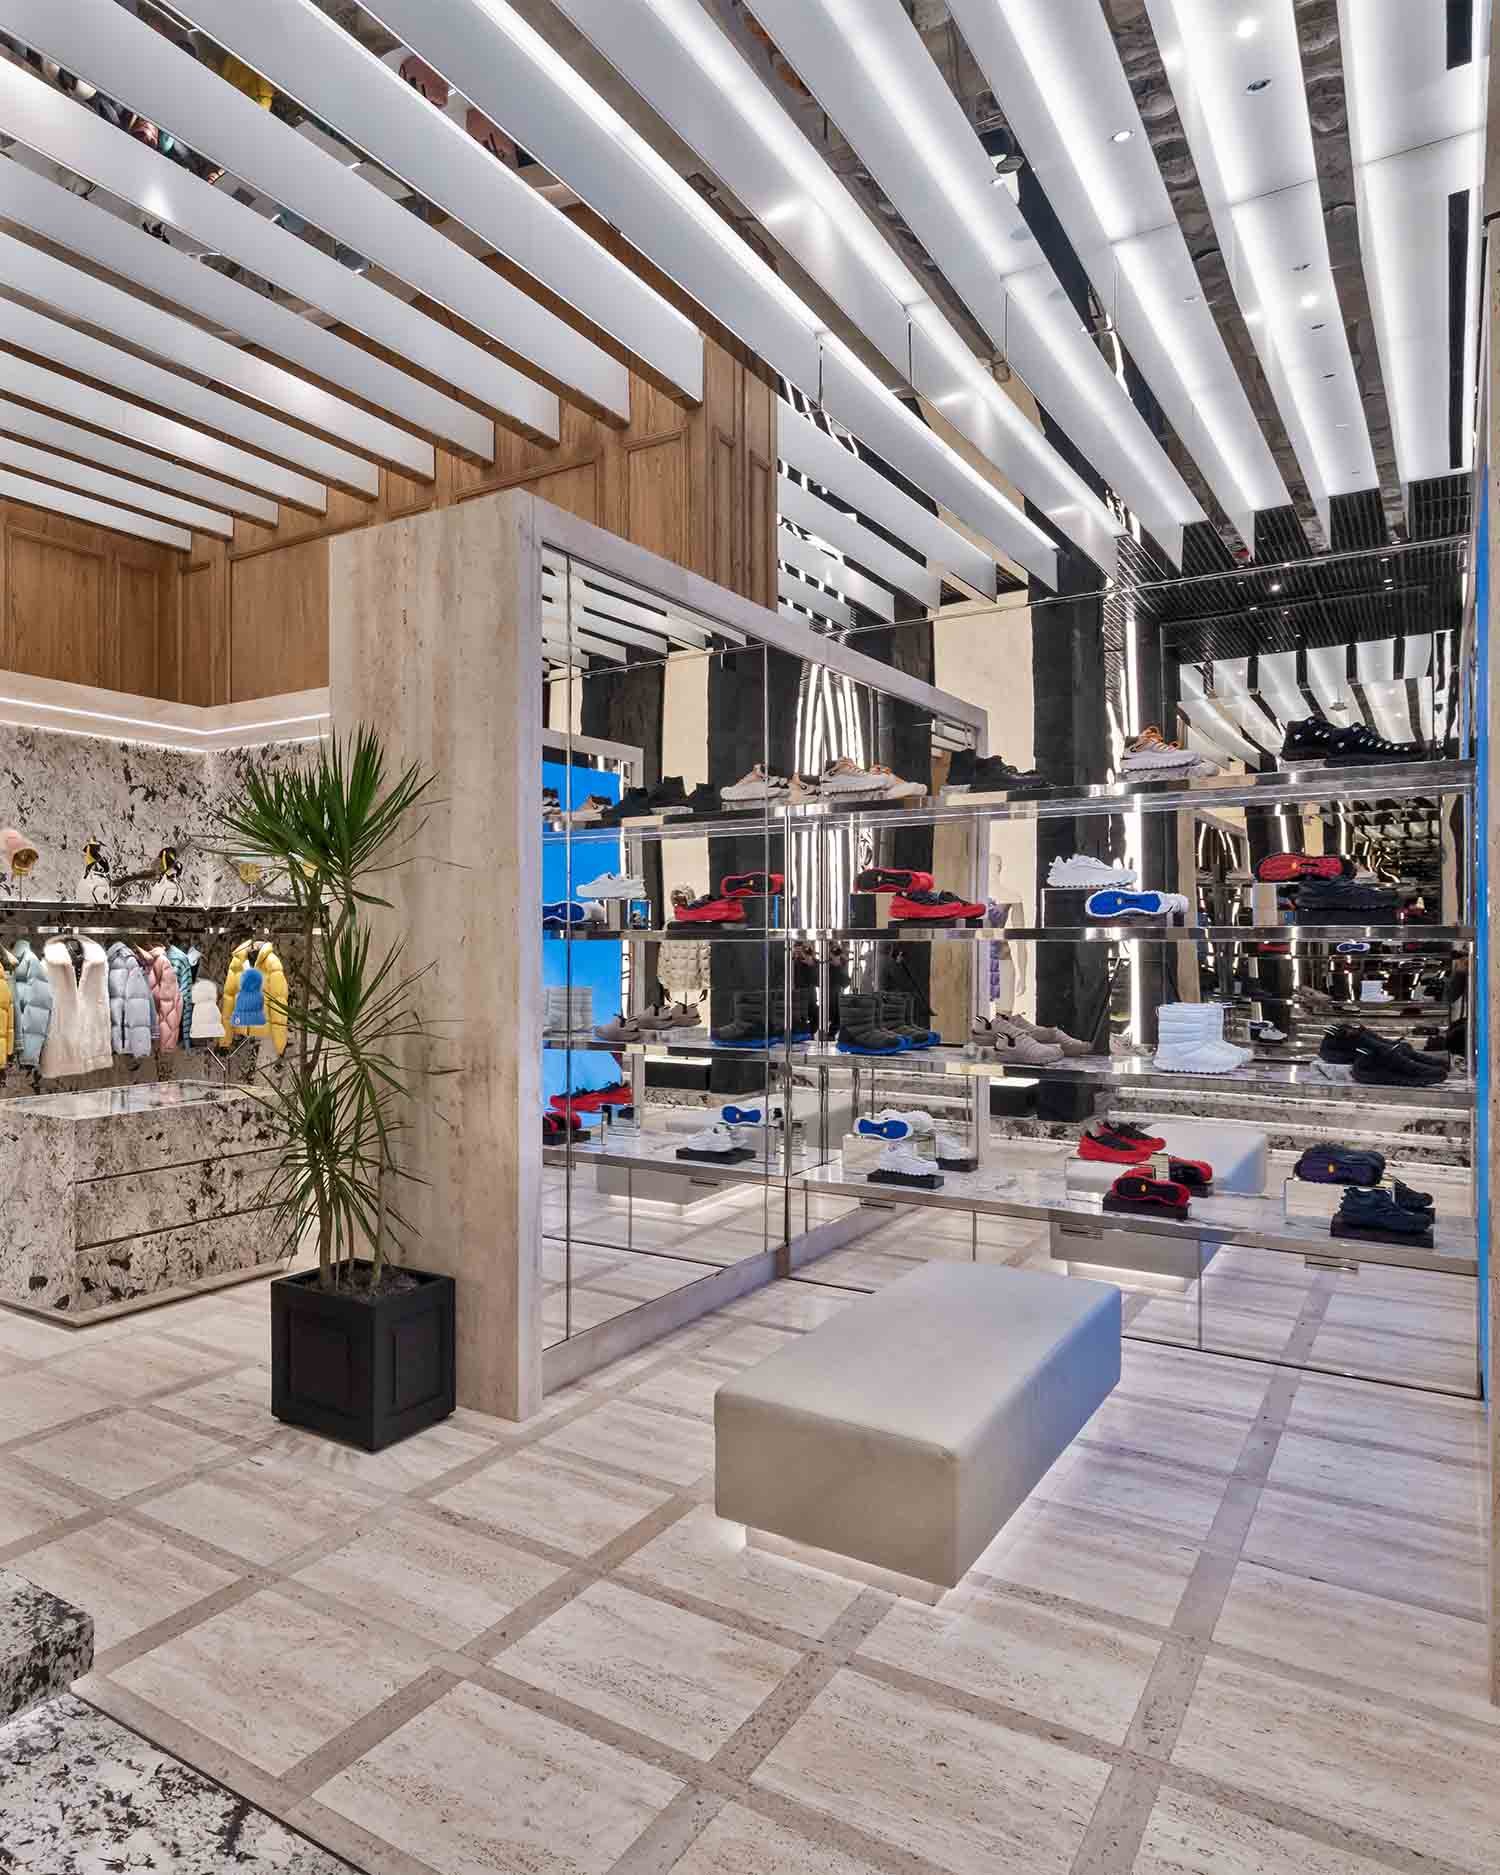 Louis Vuitton Planning Installation In Miami Design District